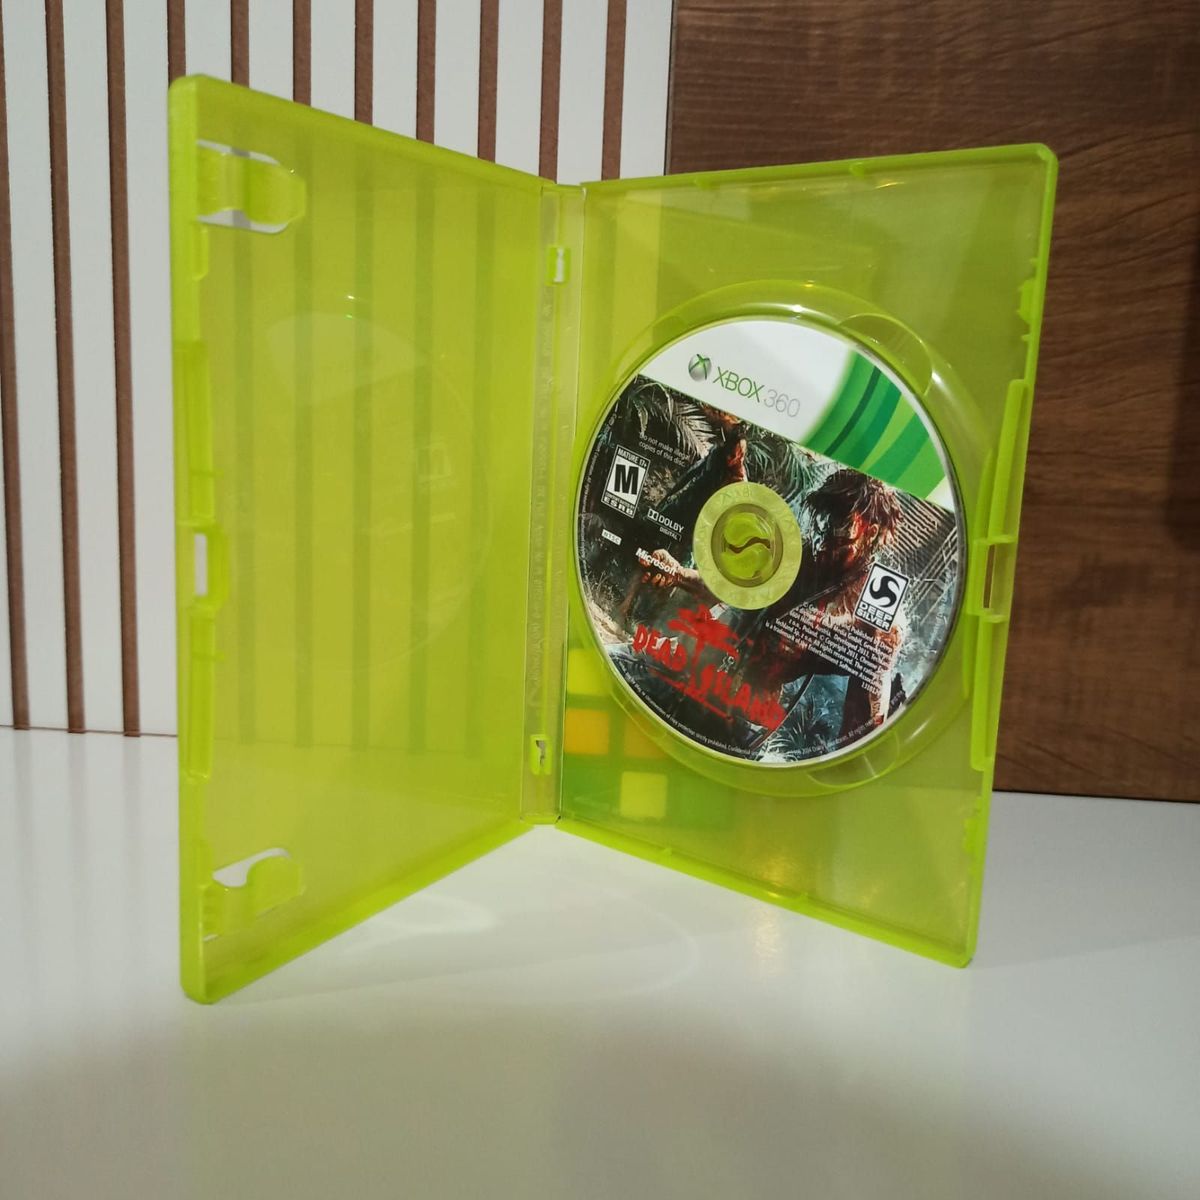 Compre agora o jogo Dead Island para seu Xbox 360 (X360)! - Seminovo, Mídia  Física e Original